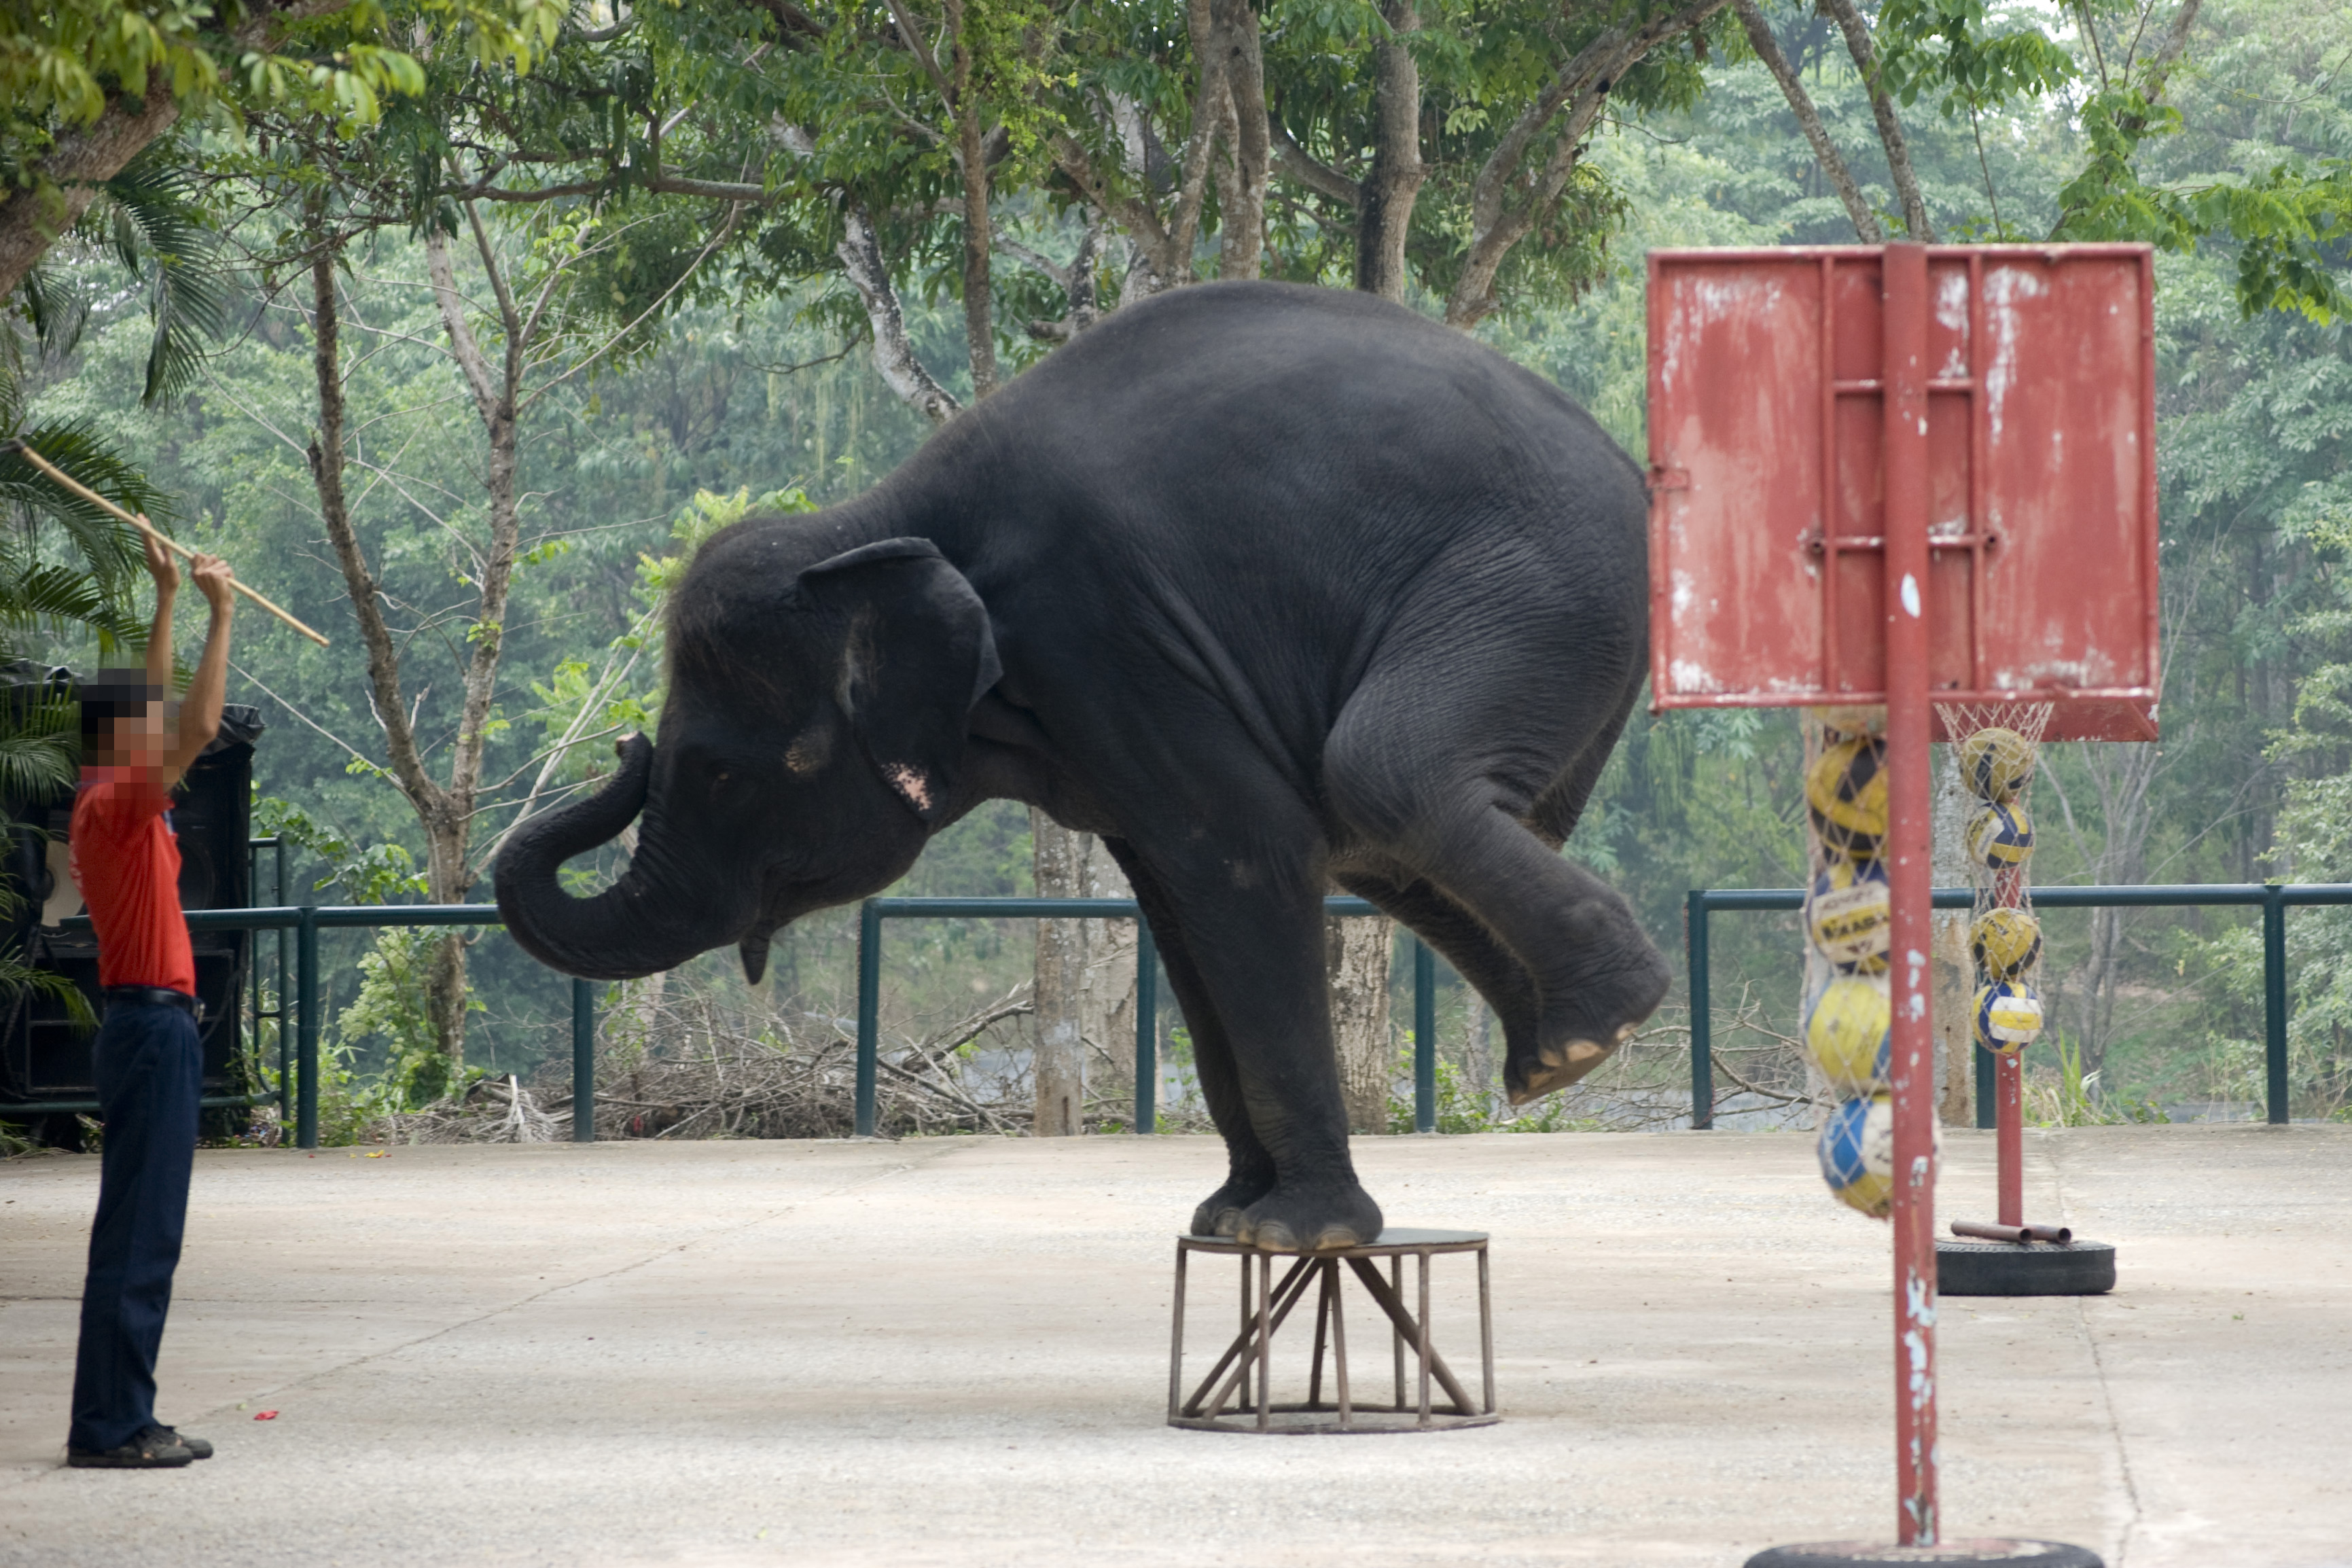 《东南亚旅游从业大象福利现状调查》:六成圈养大象生活在恶劣条件中